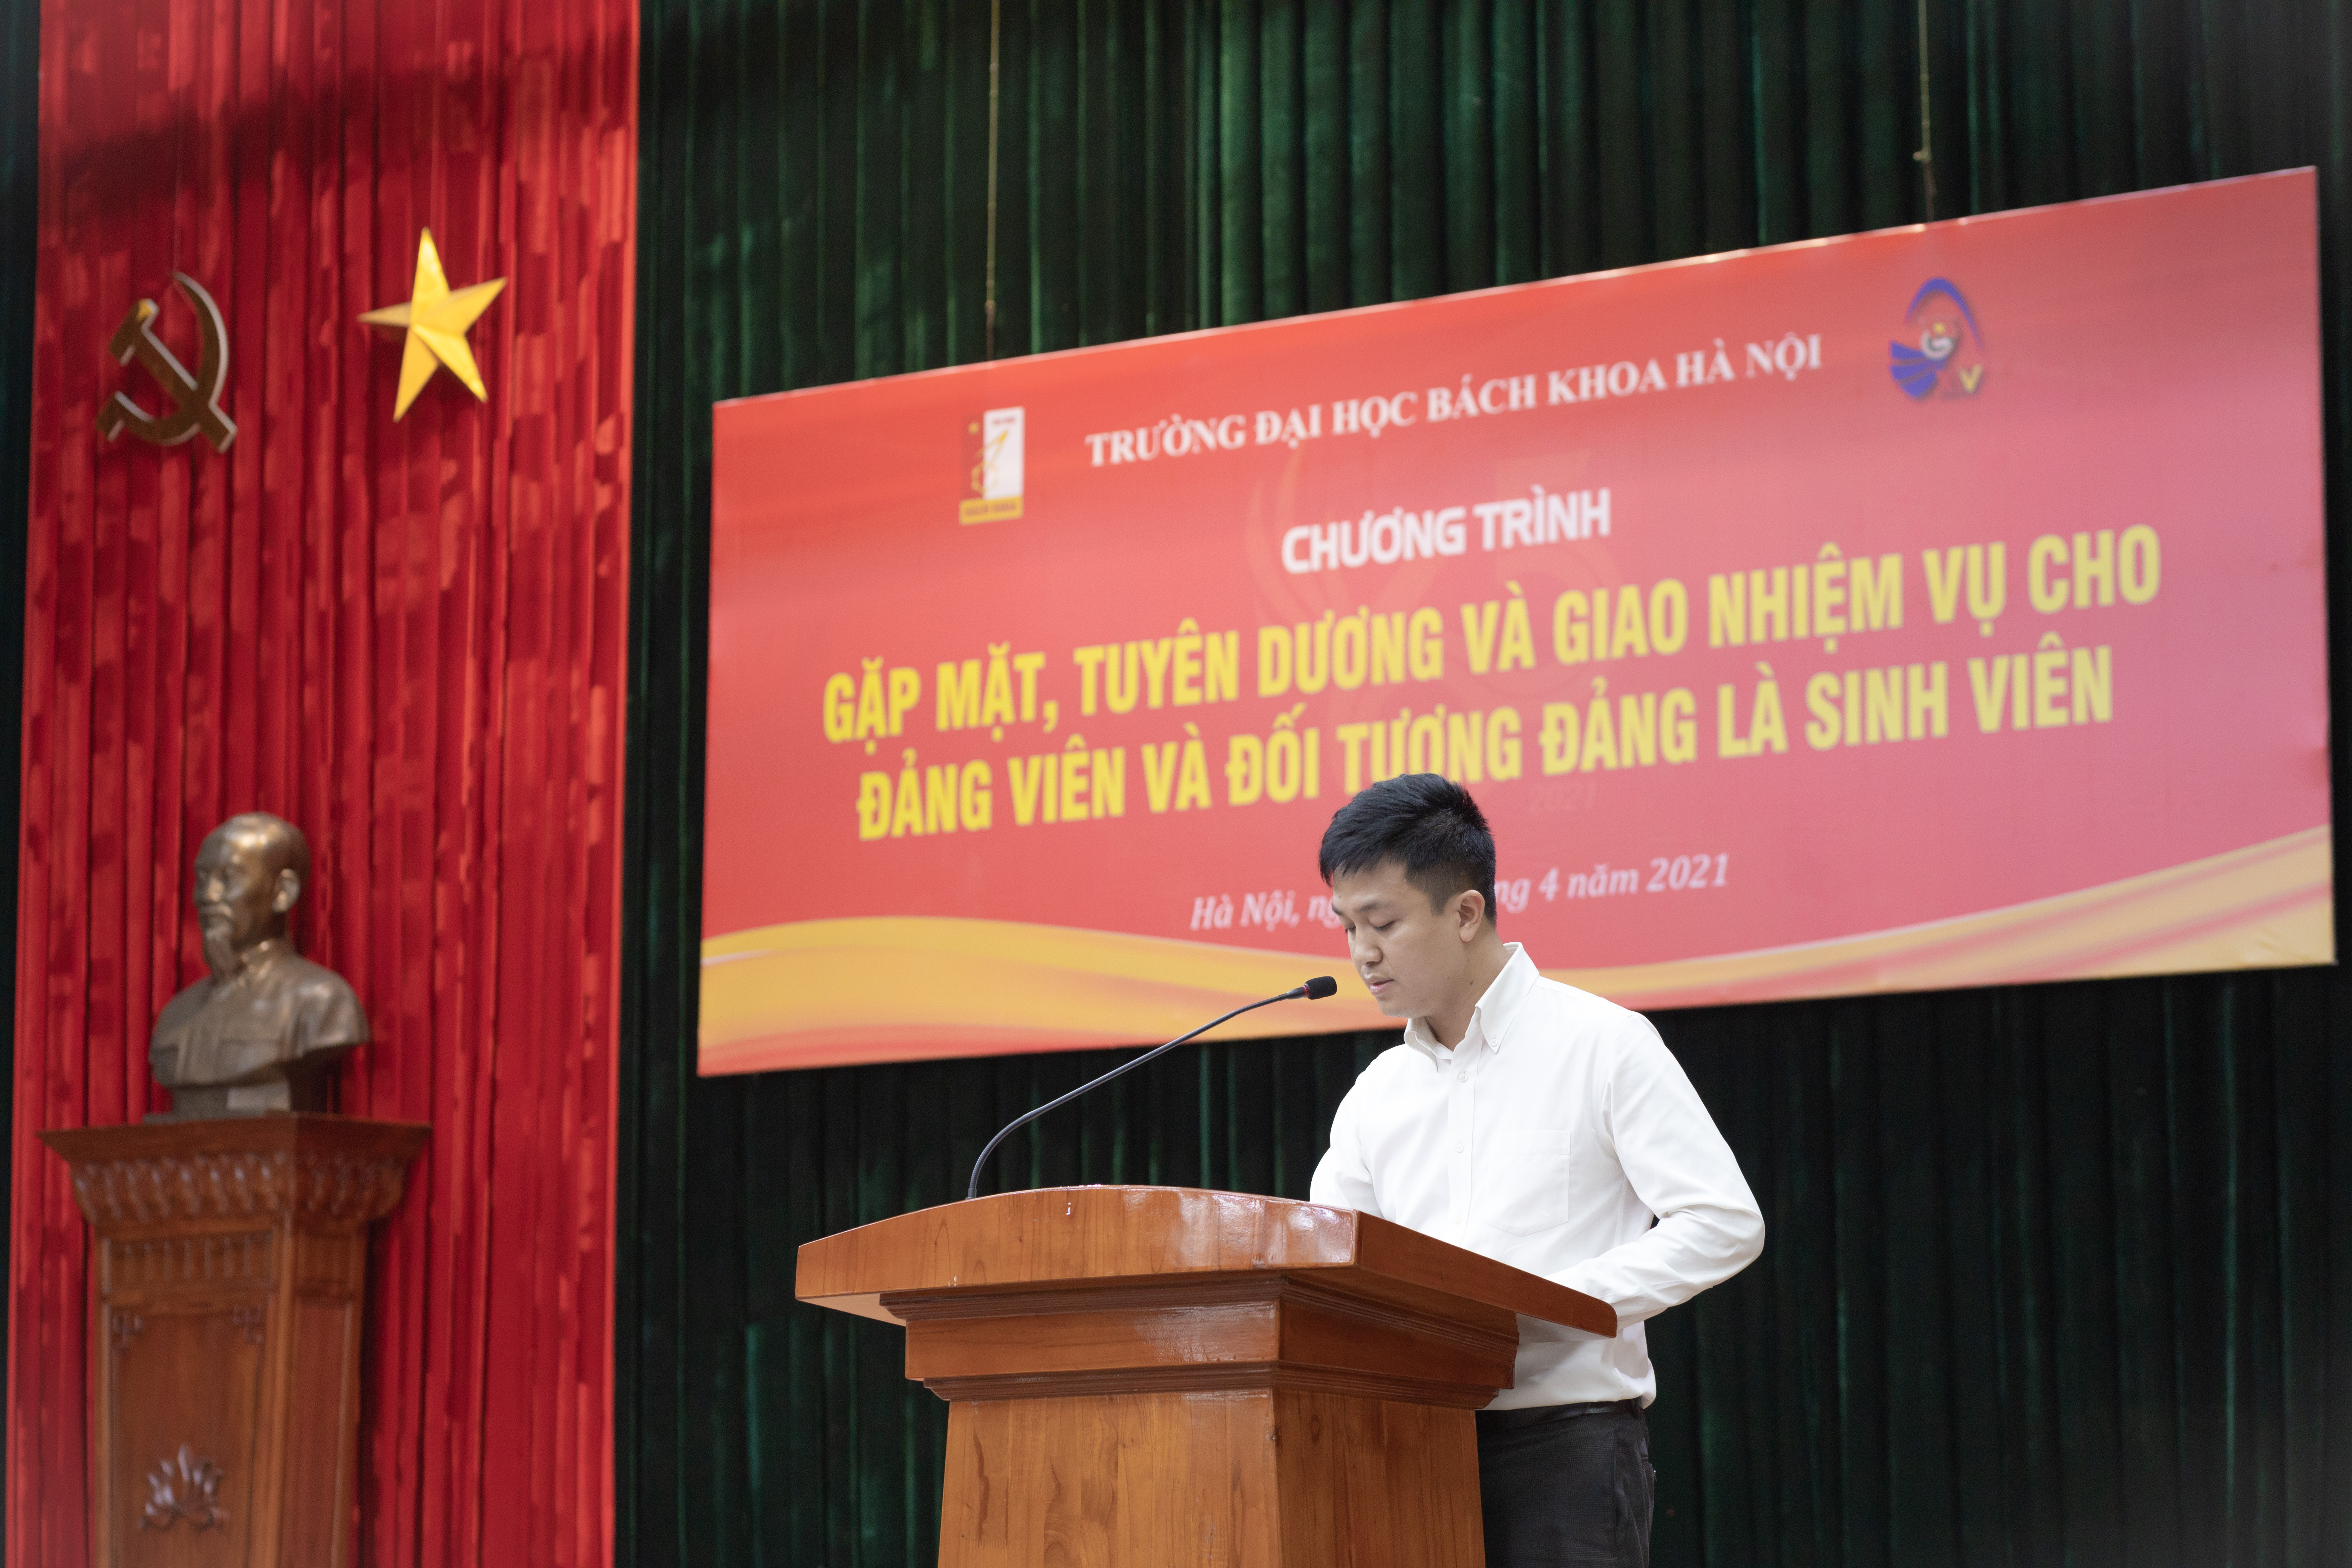 Đồng chí Trương Công Tuấn – Bí thư Chi bộ sinh viên 1, Phó Bí thư Đoàn trường – báo cáo tổng kết tại buổi lễ